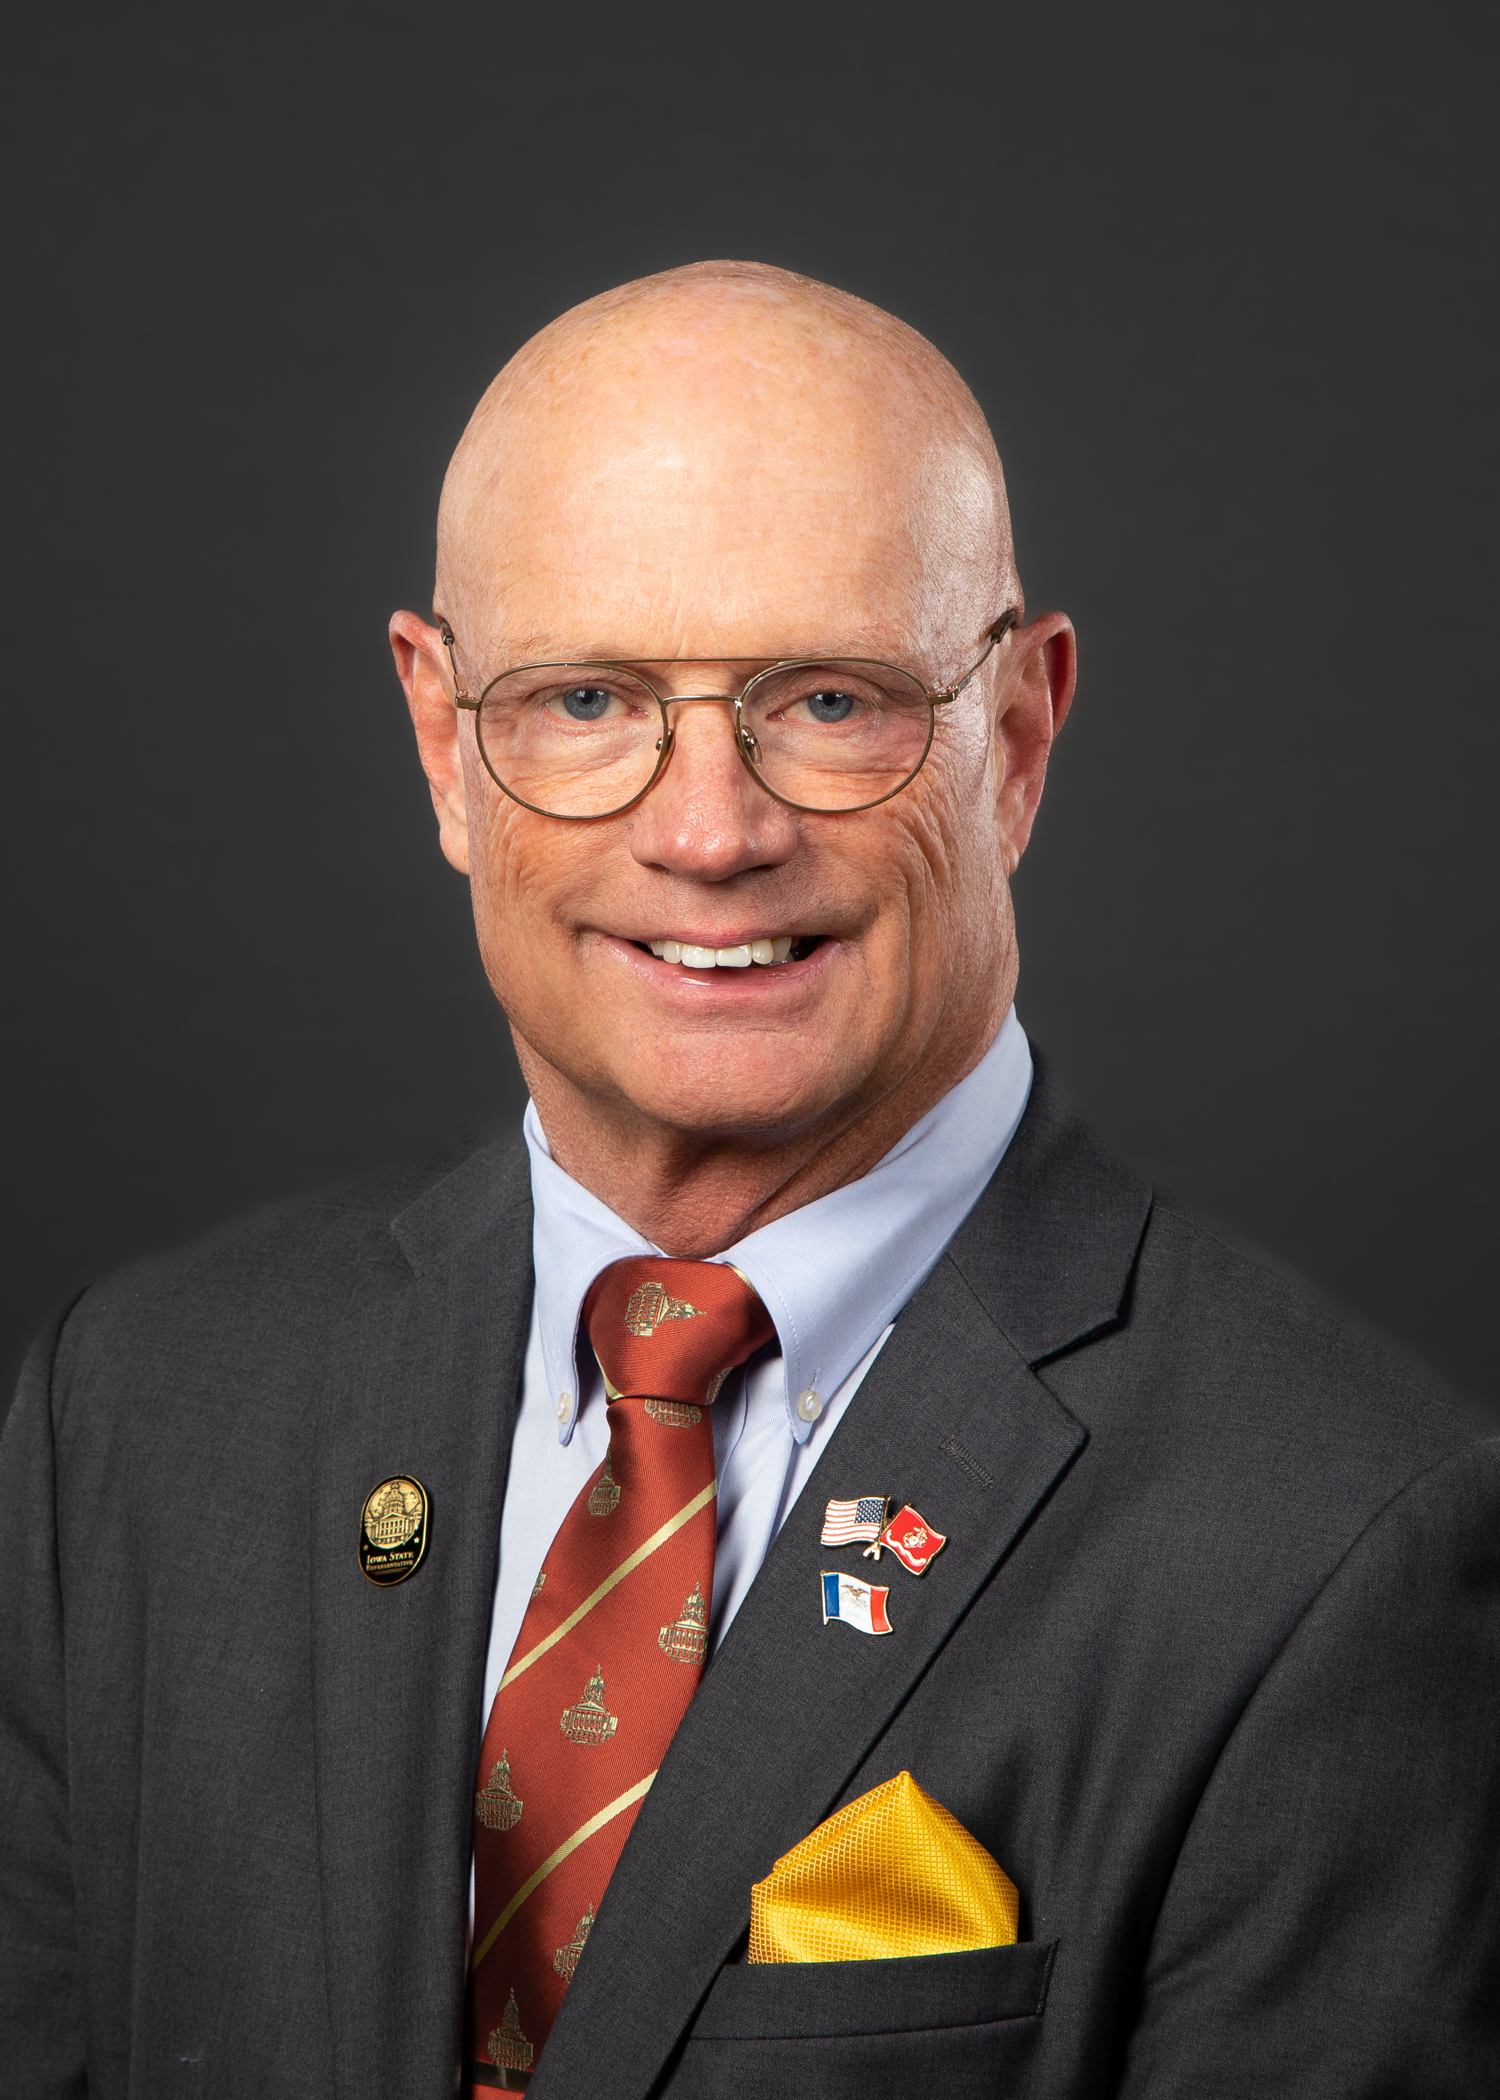  senator Steven Holt